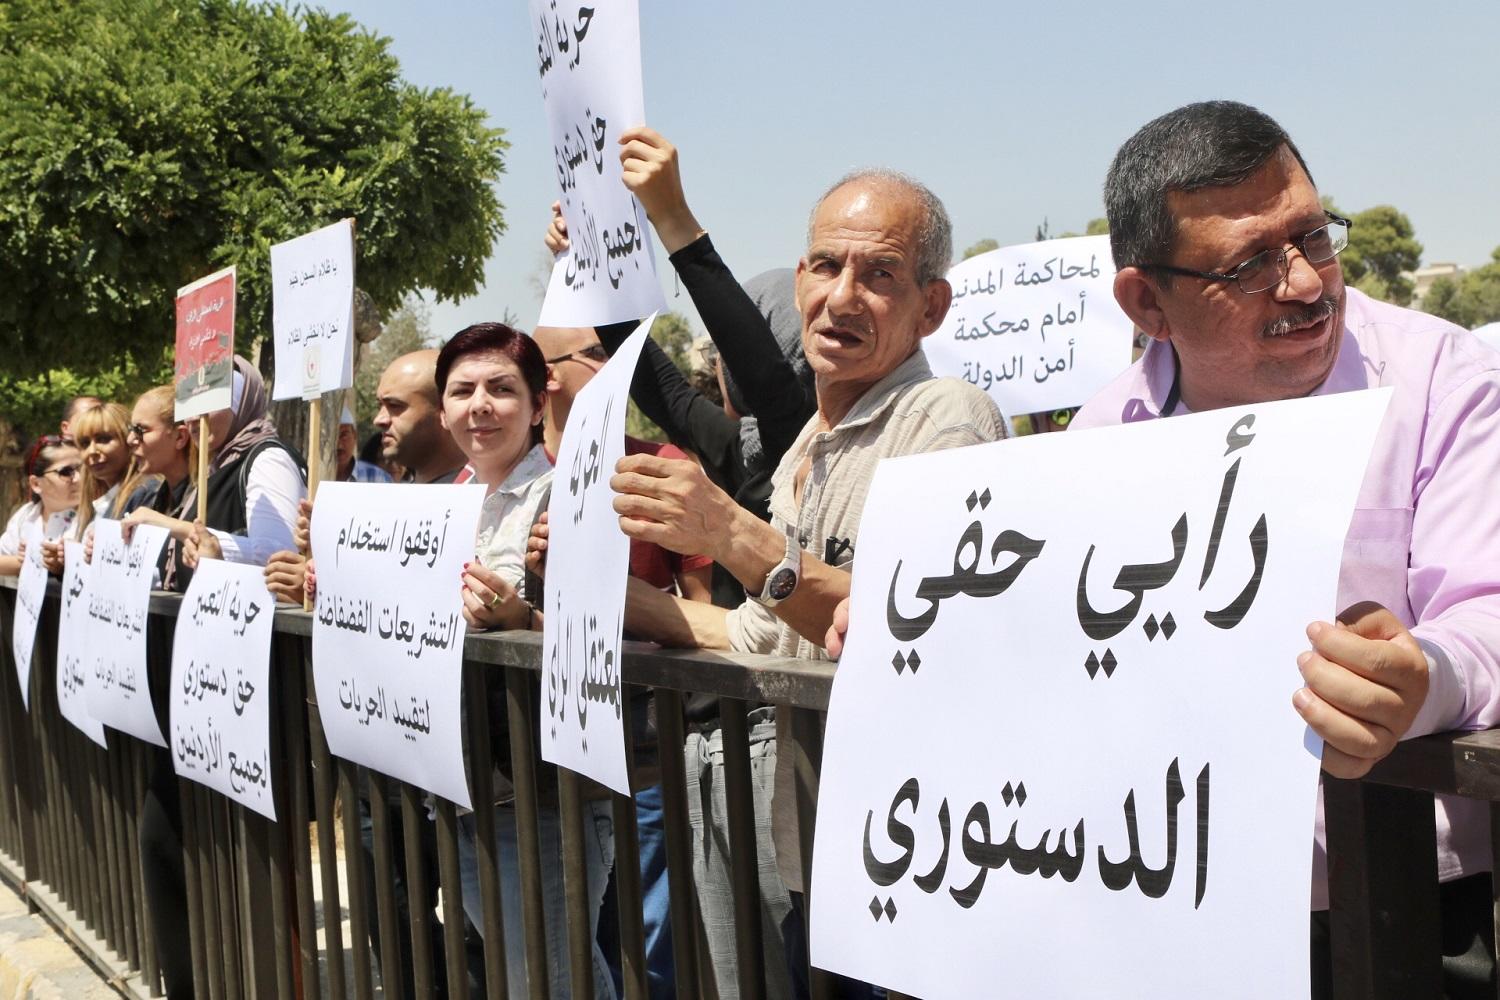 معتصمون أمام مجلس النواب للمطالبة بالإفراج عن "معتقلي الرأي"، 27 آب/أغسطس 2019. (صلاح ملكاوي/المملكة)